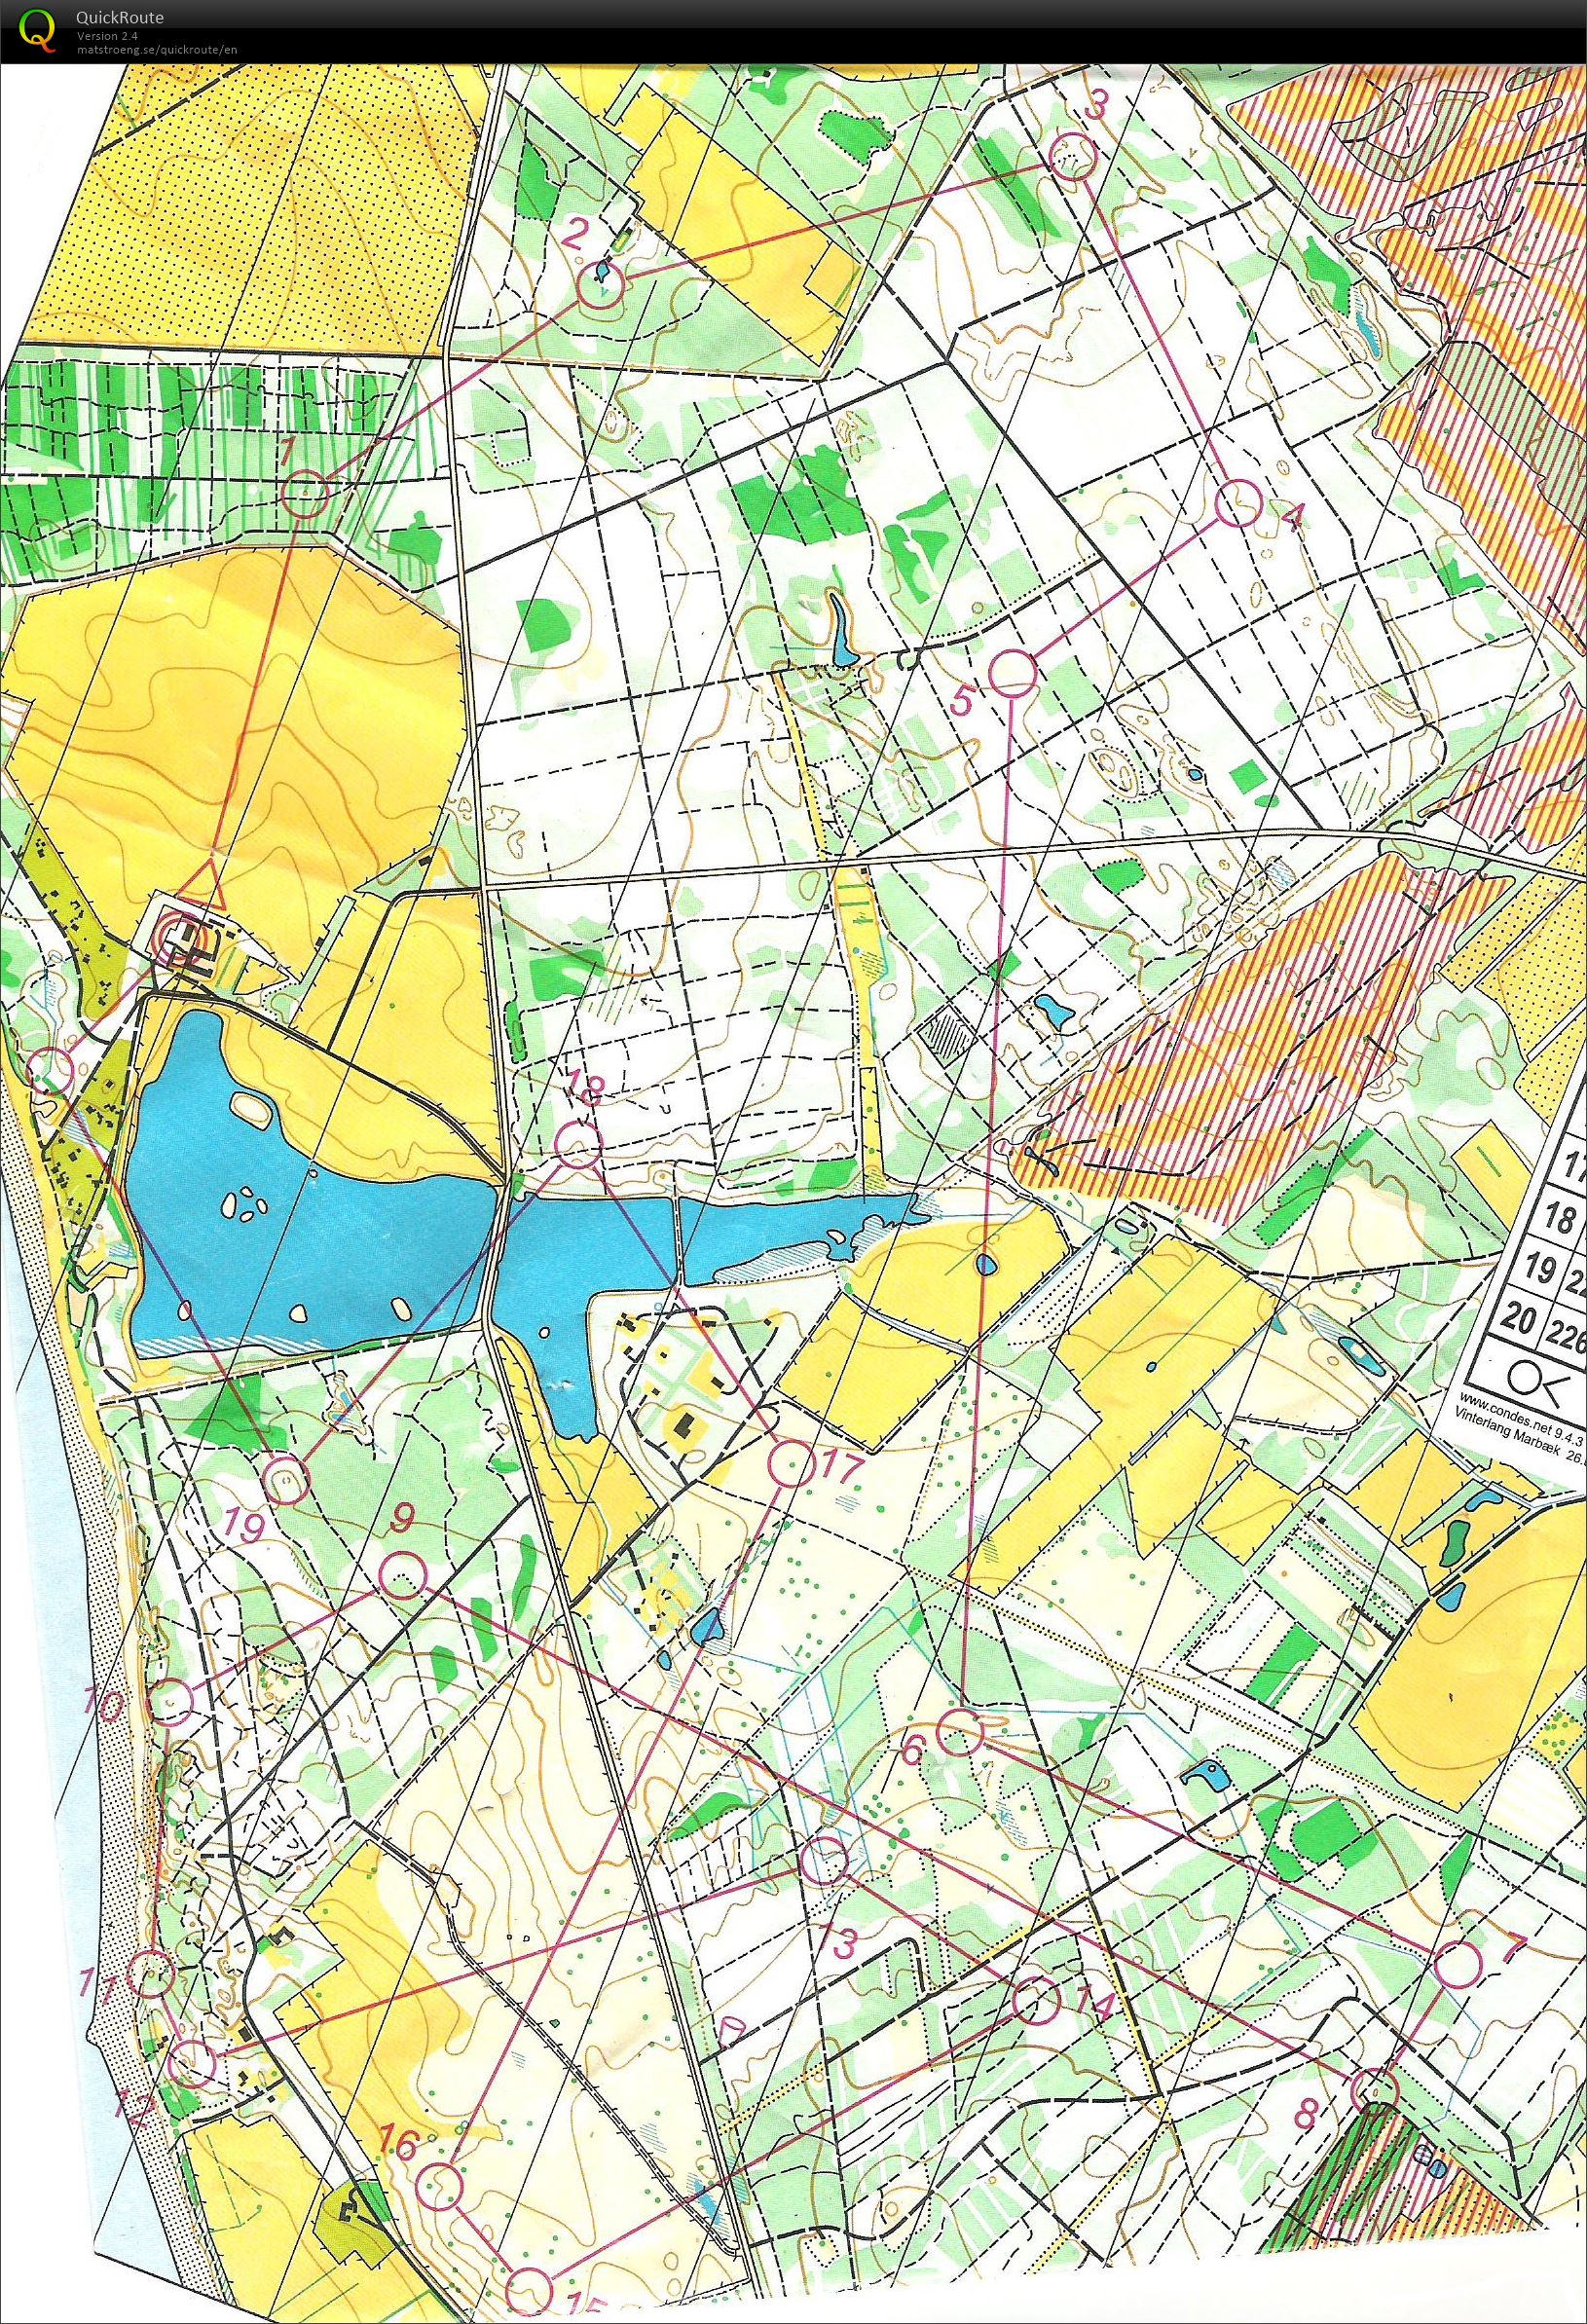 Vinterlangdistance Marbæk Plantage 12.3 km (2017-02-26)